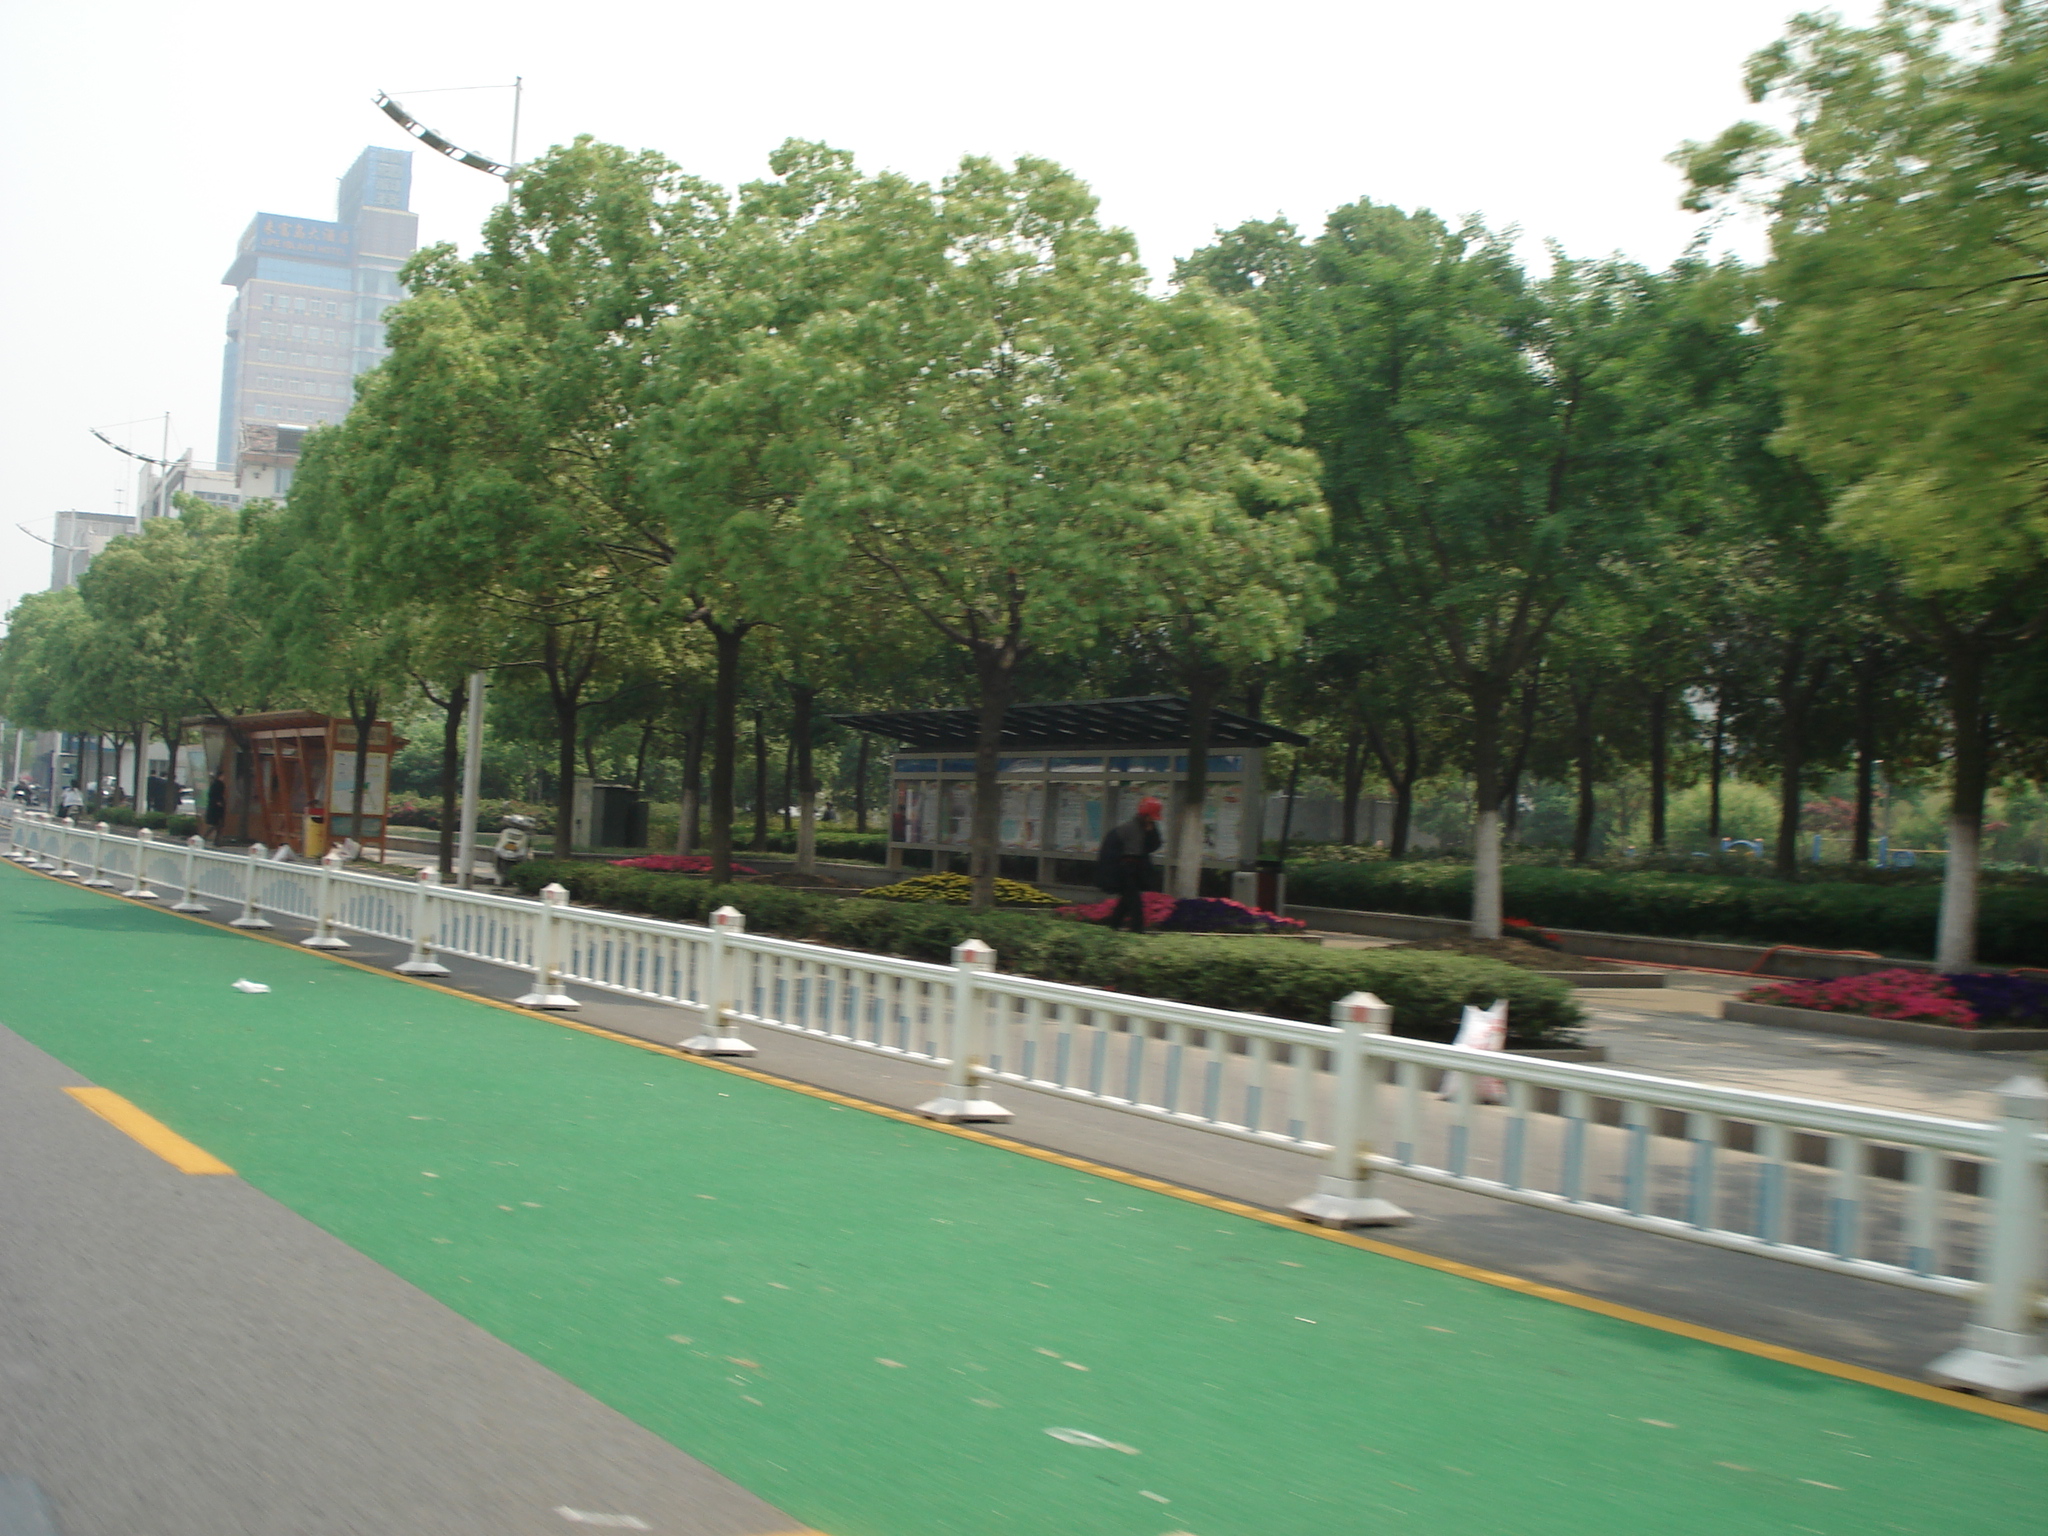 原装彩色防滑路面代理_彩色防滑路面施工相关-上海柯路美道路工程有限公司